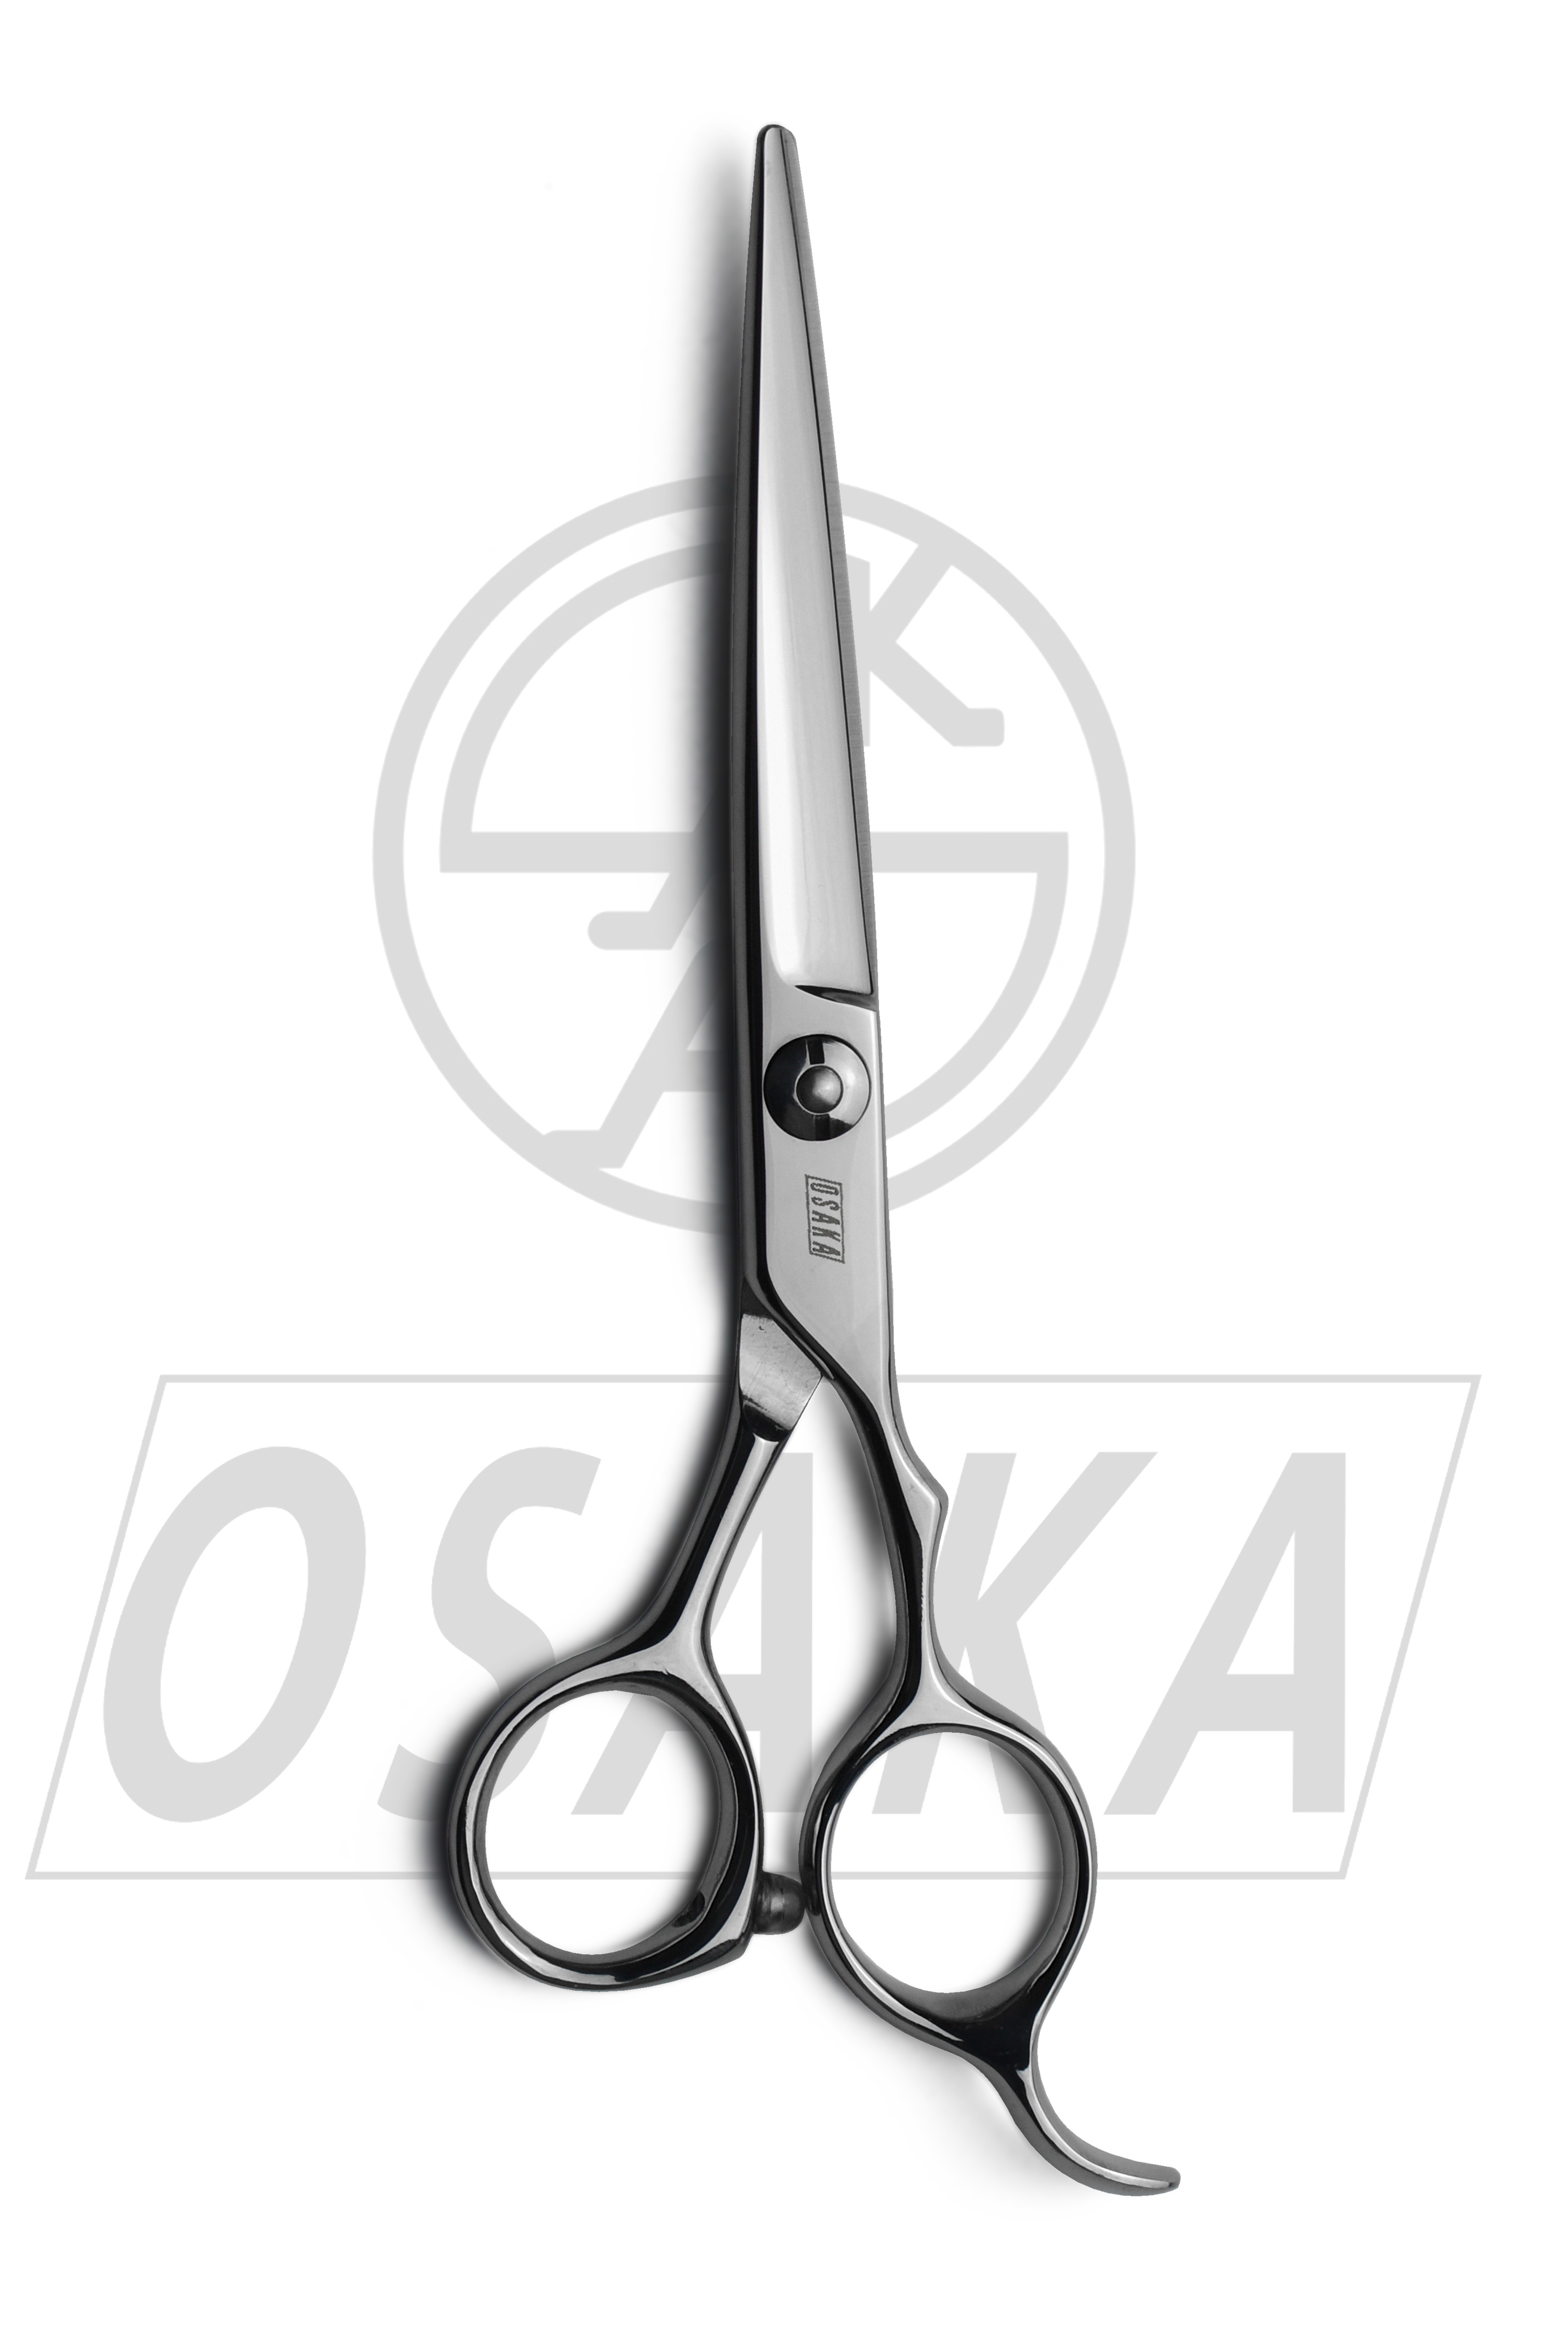 Ciseaux de coiffure japonais OSAKA GX, ciseaux légers, piquetage, précision, acier carbone 440C, ciseaux ergonomiques de la marque OSAKA